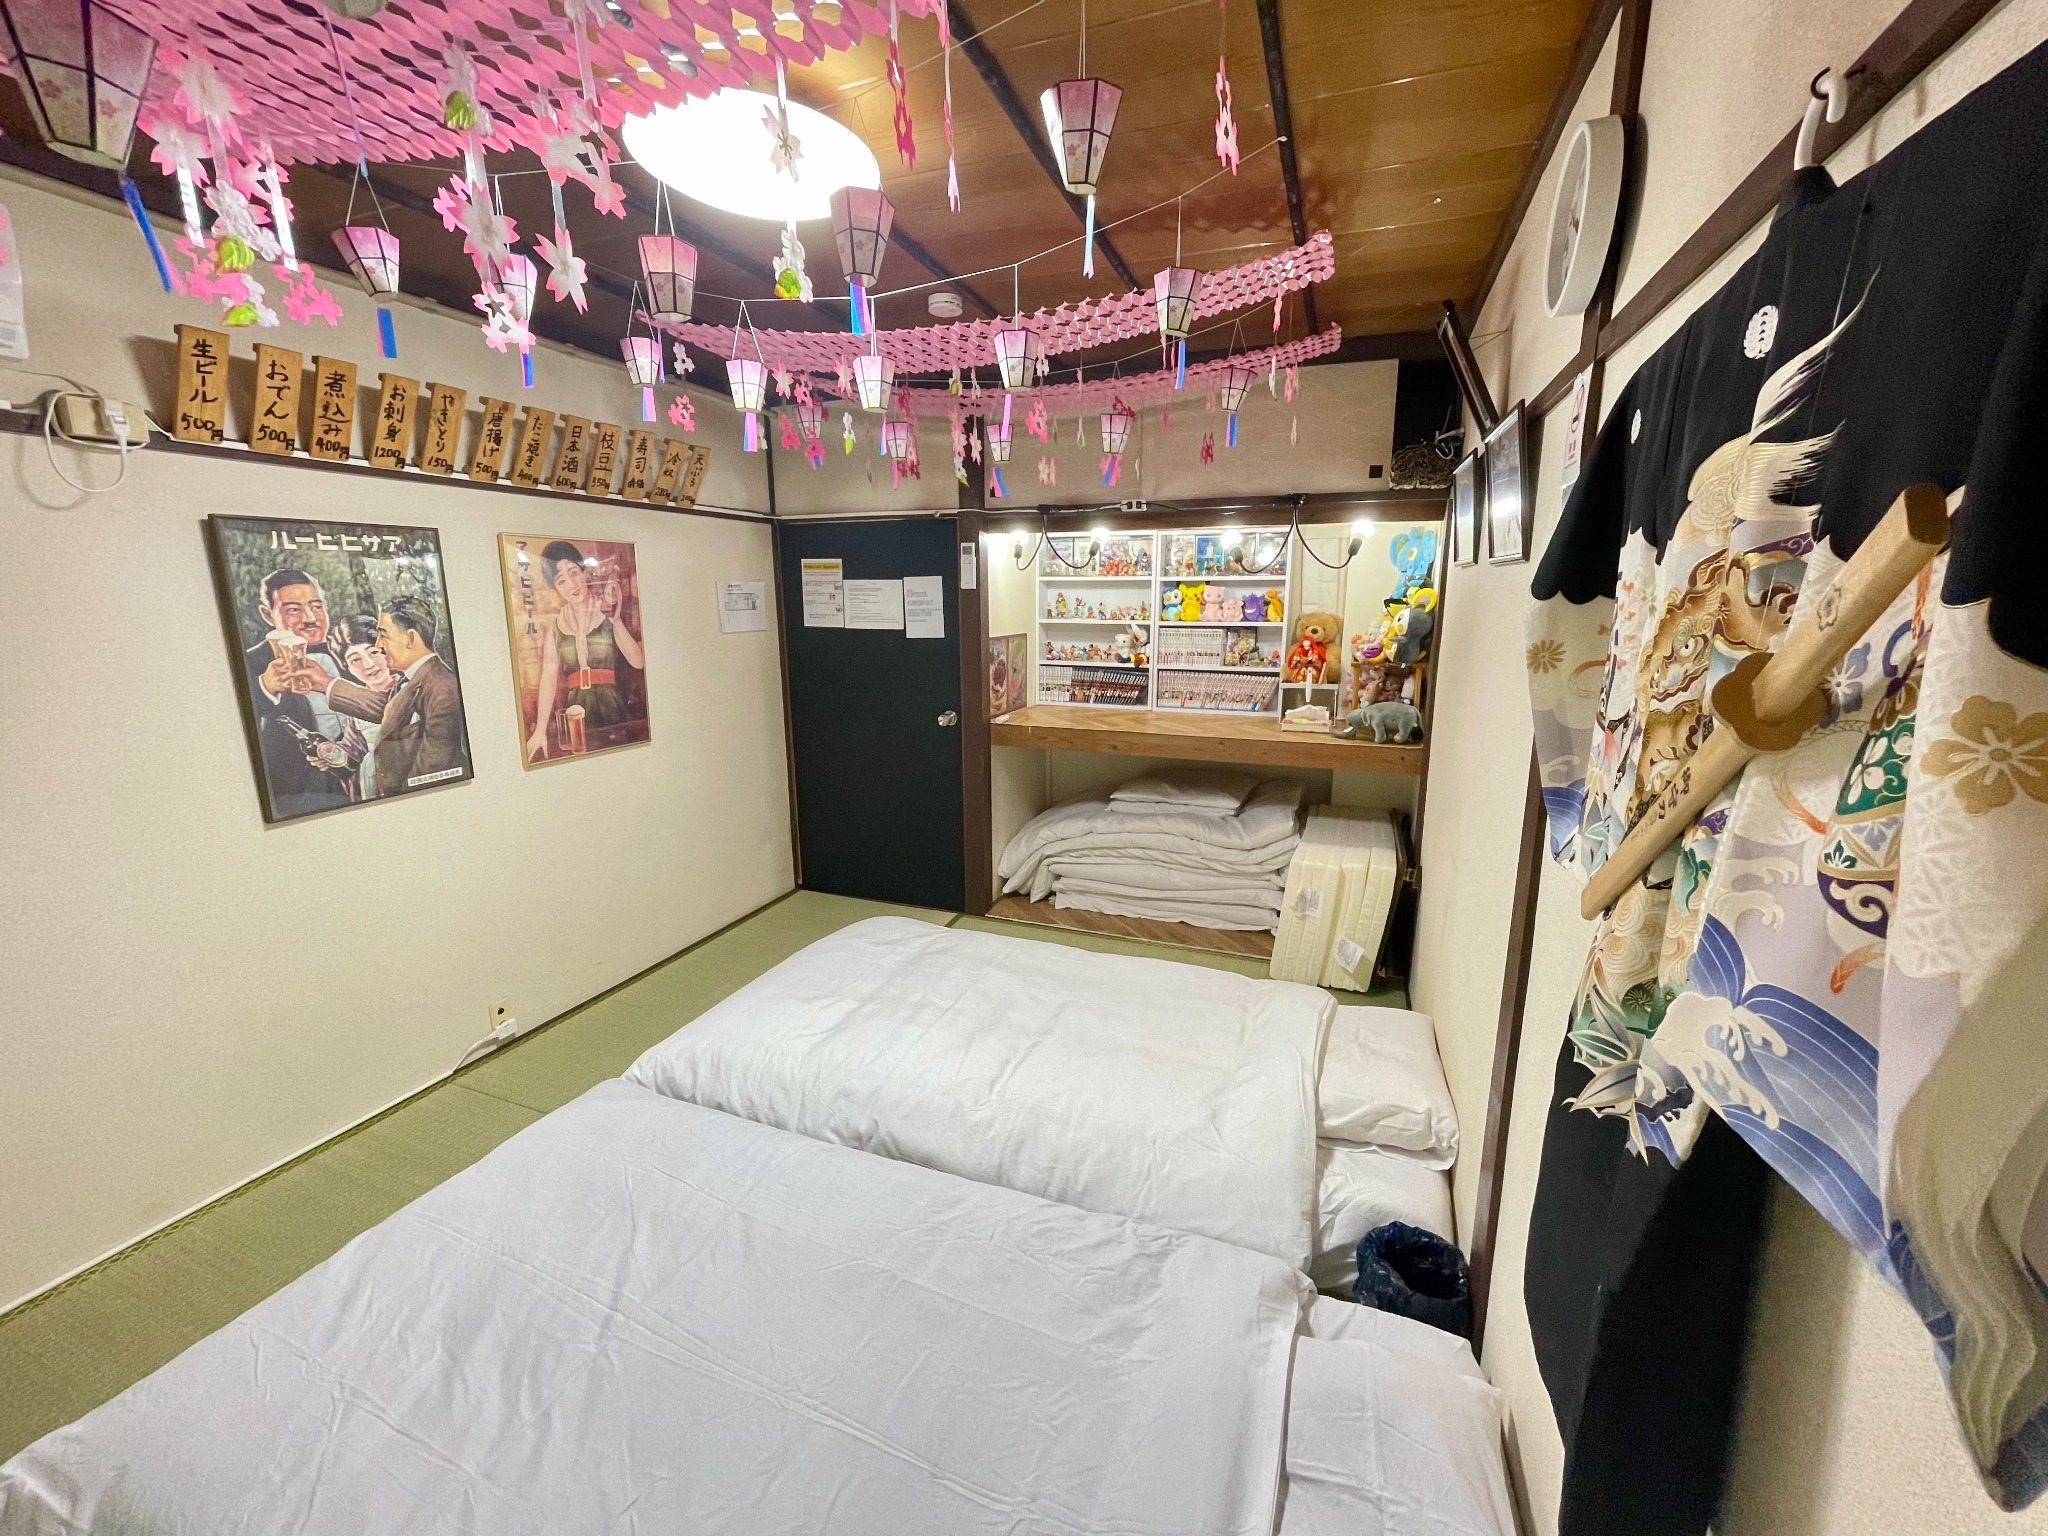 「新大久保駅」から徒歩5分圏内にある、「日本の文化」をふんだんに盛り込んだお部屋です。